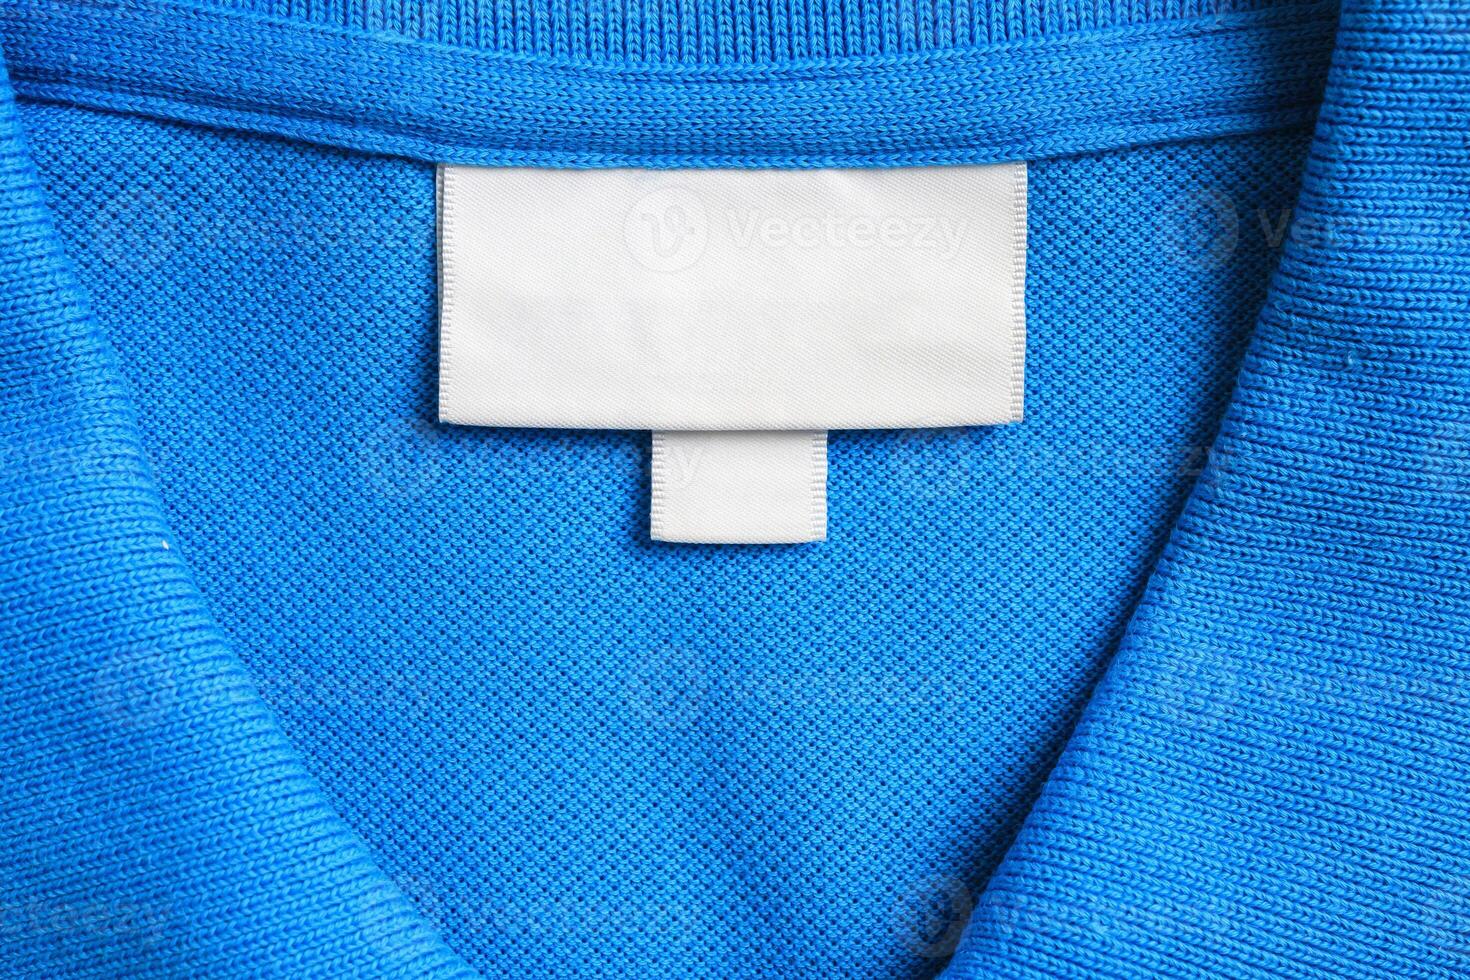 tom vit tvätt vård kläder märka på blå skjorta tyg textur bakgrund foto